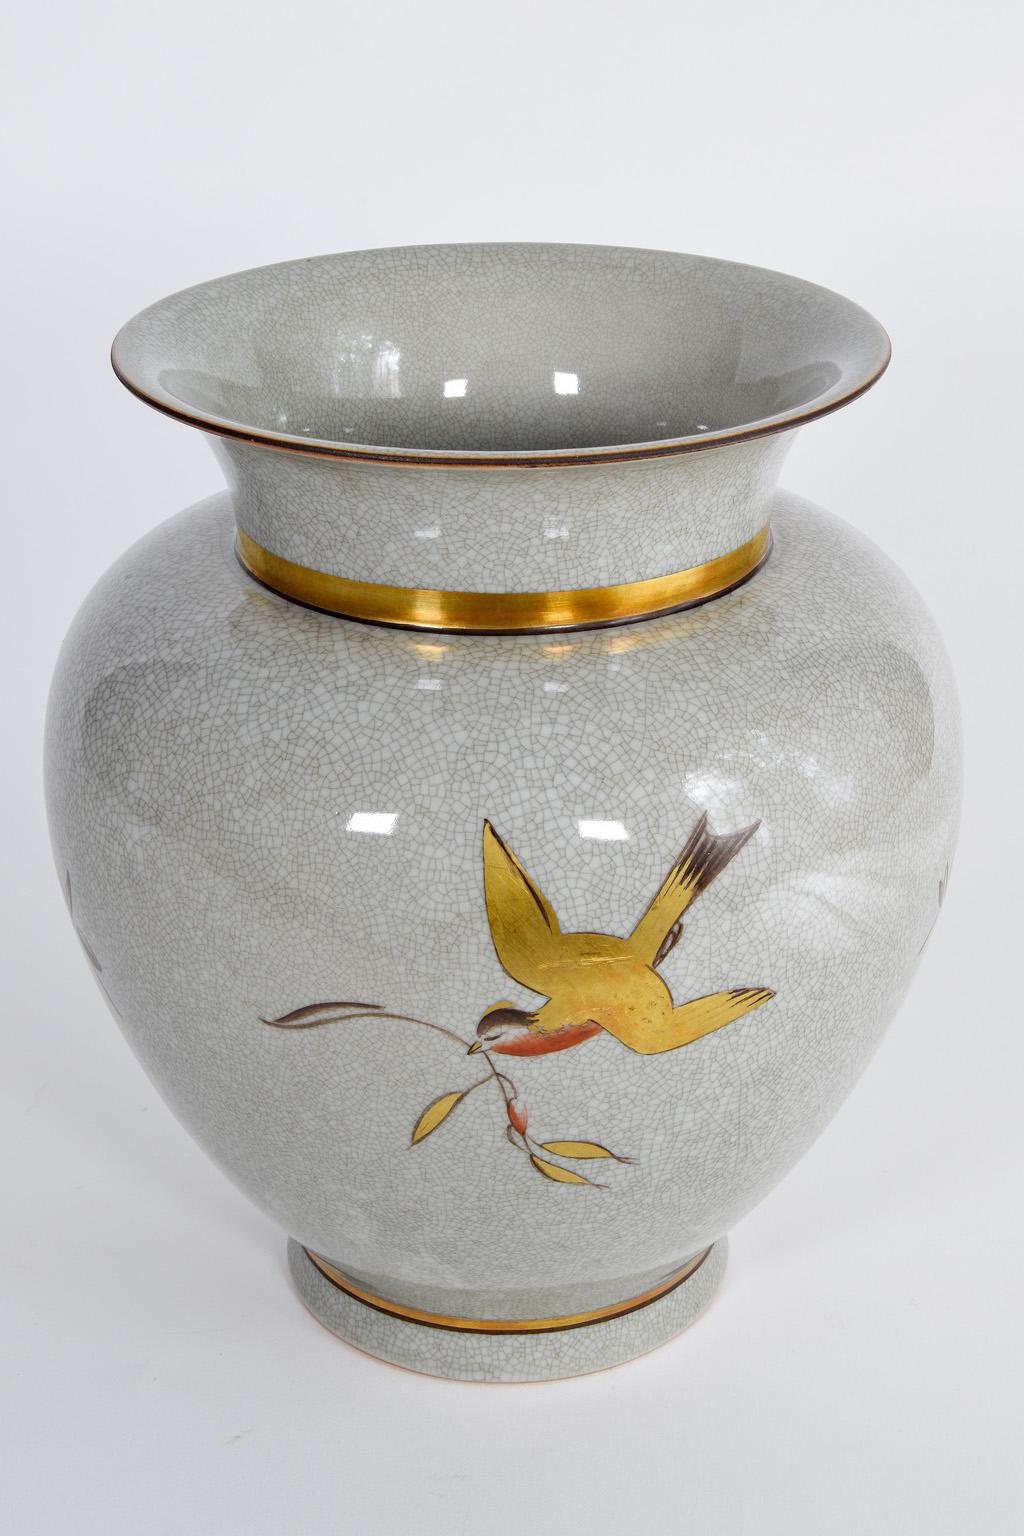 Danish Large Royal Copenhagen Porcelain Crackle Glaze Vase, Flower Decor, 1950s Denmark